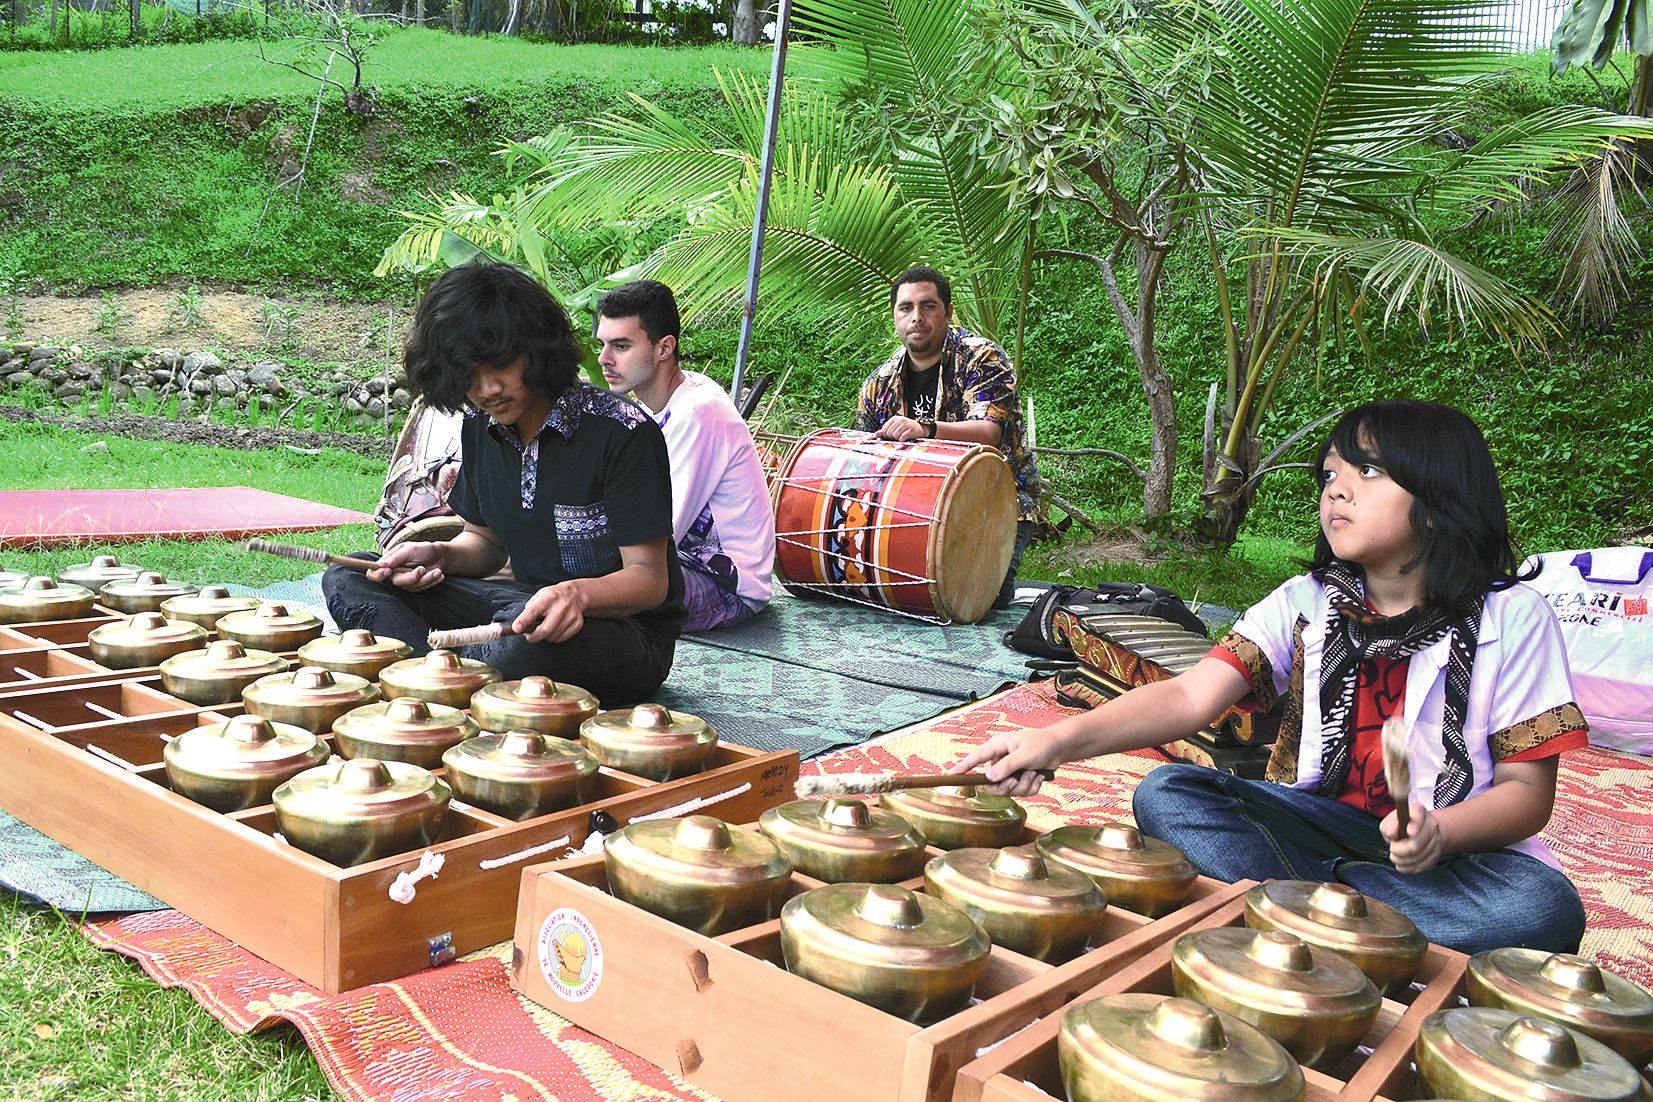 Parmi les nombreux invités, la section musicale de l’Association indonésienne de Nouvelle-Calédonie a proposé un concert de Talempong, un instrument traditionnel de Sumatra. L’occasion pour l’AINC d’annoncer la date de sa prochaine journée culturelle au f